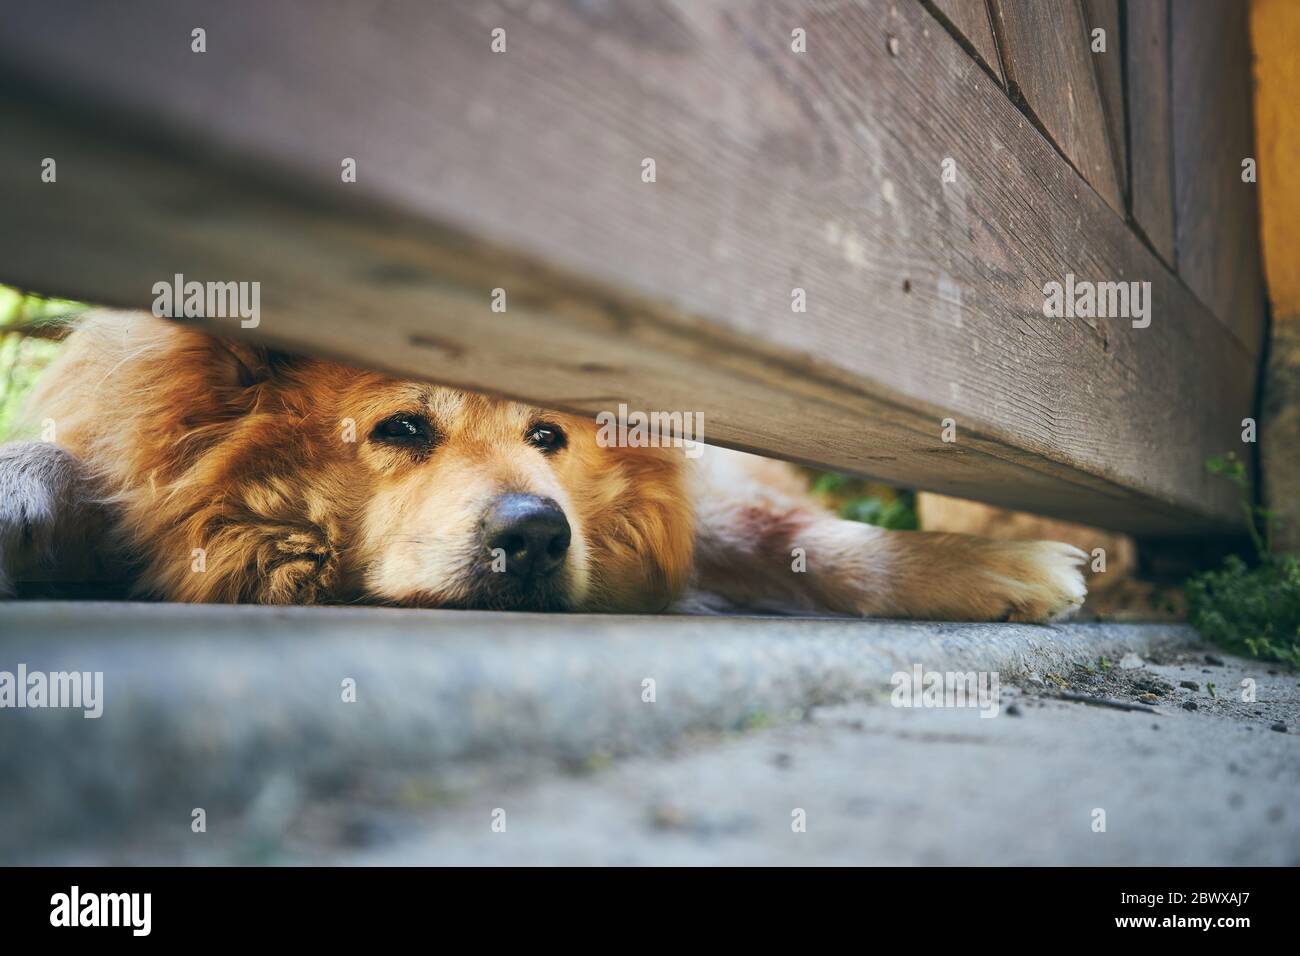 Regard triste de chien (Golden Retriever) sous la porte de la maison. Thèmes de garde, d'attente et de fidélité. Banque D'Images